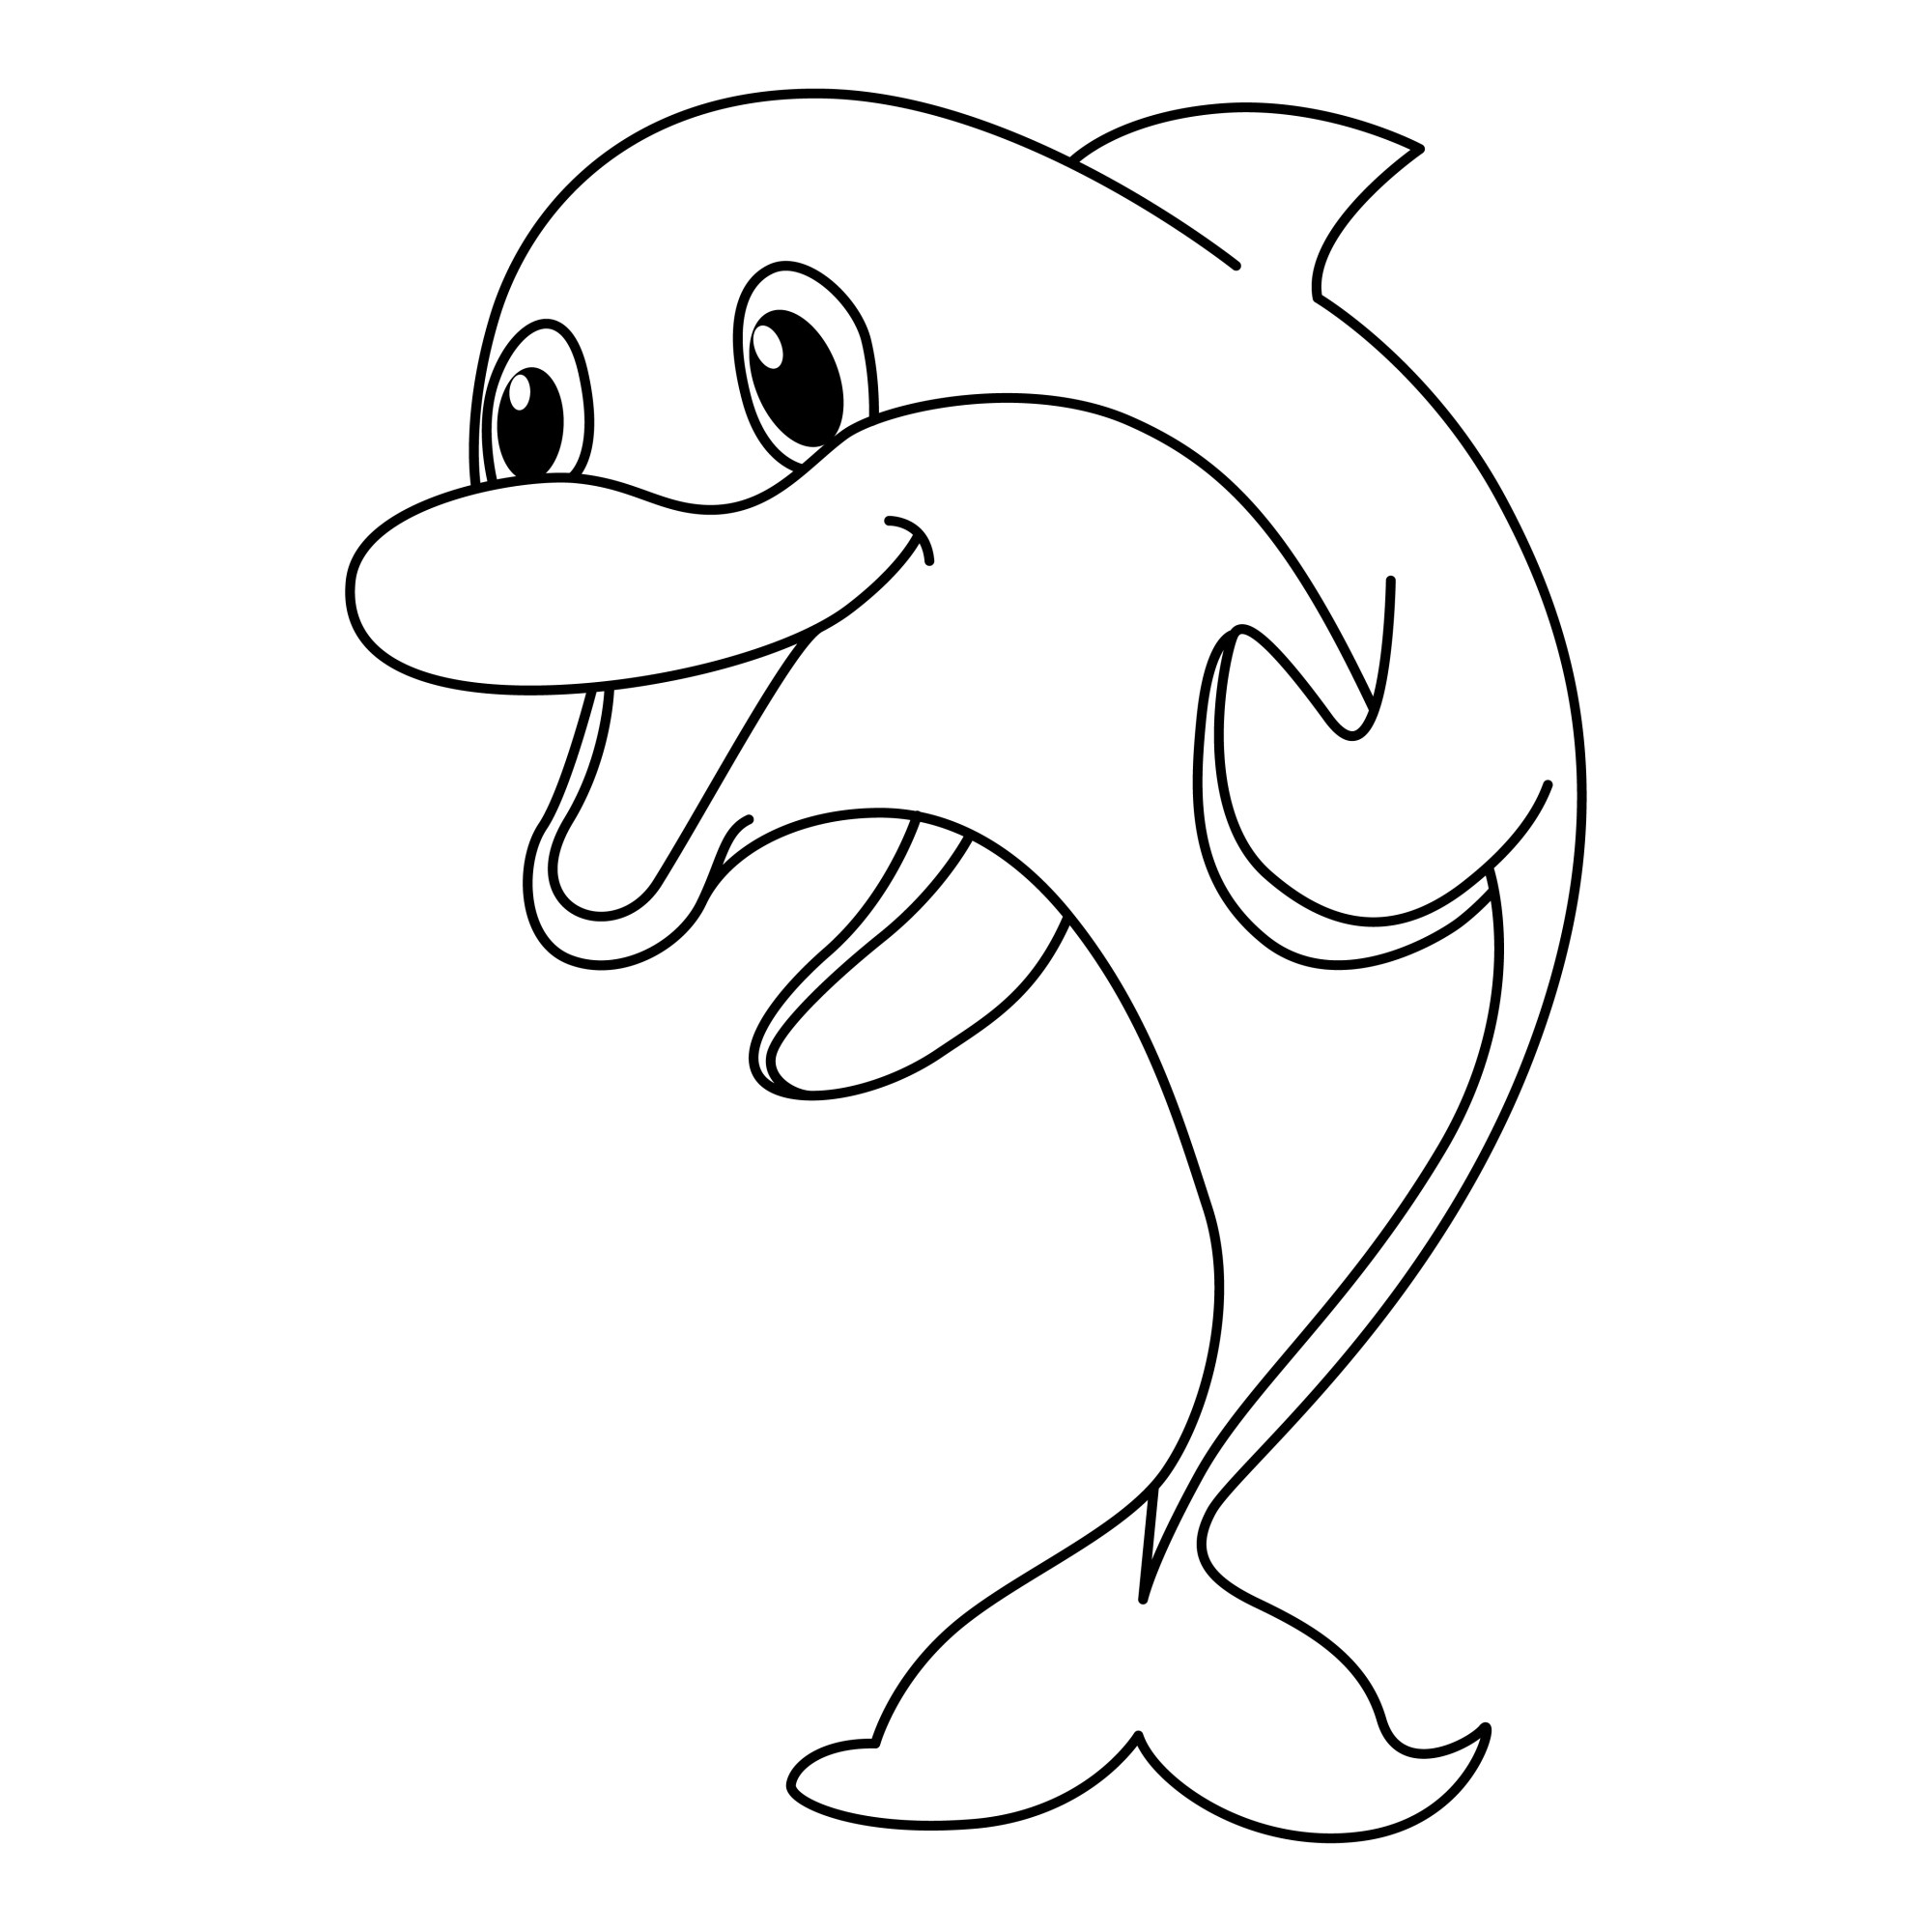 Раскраска для детей: веселый дельфин